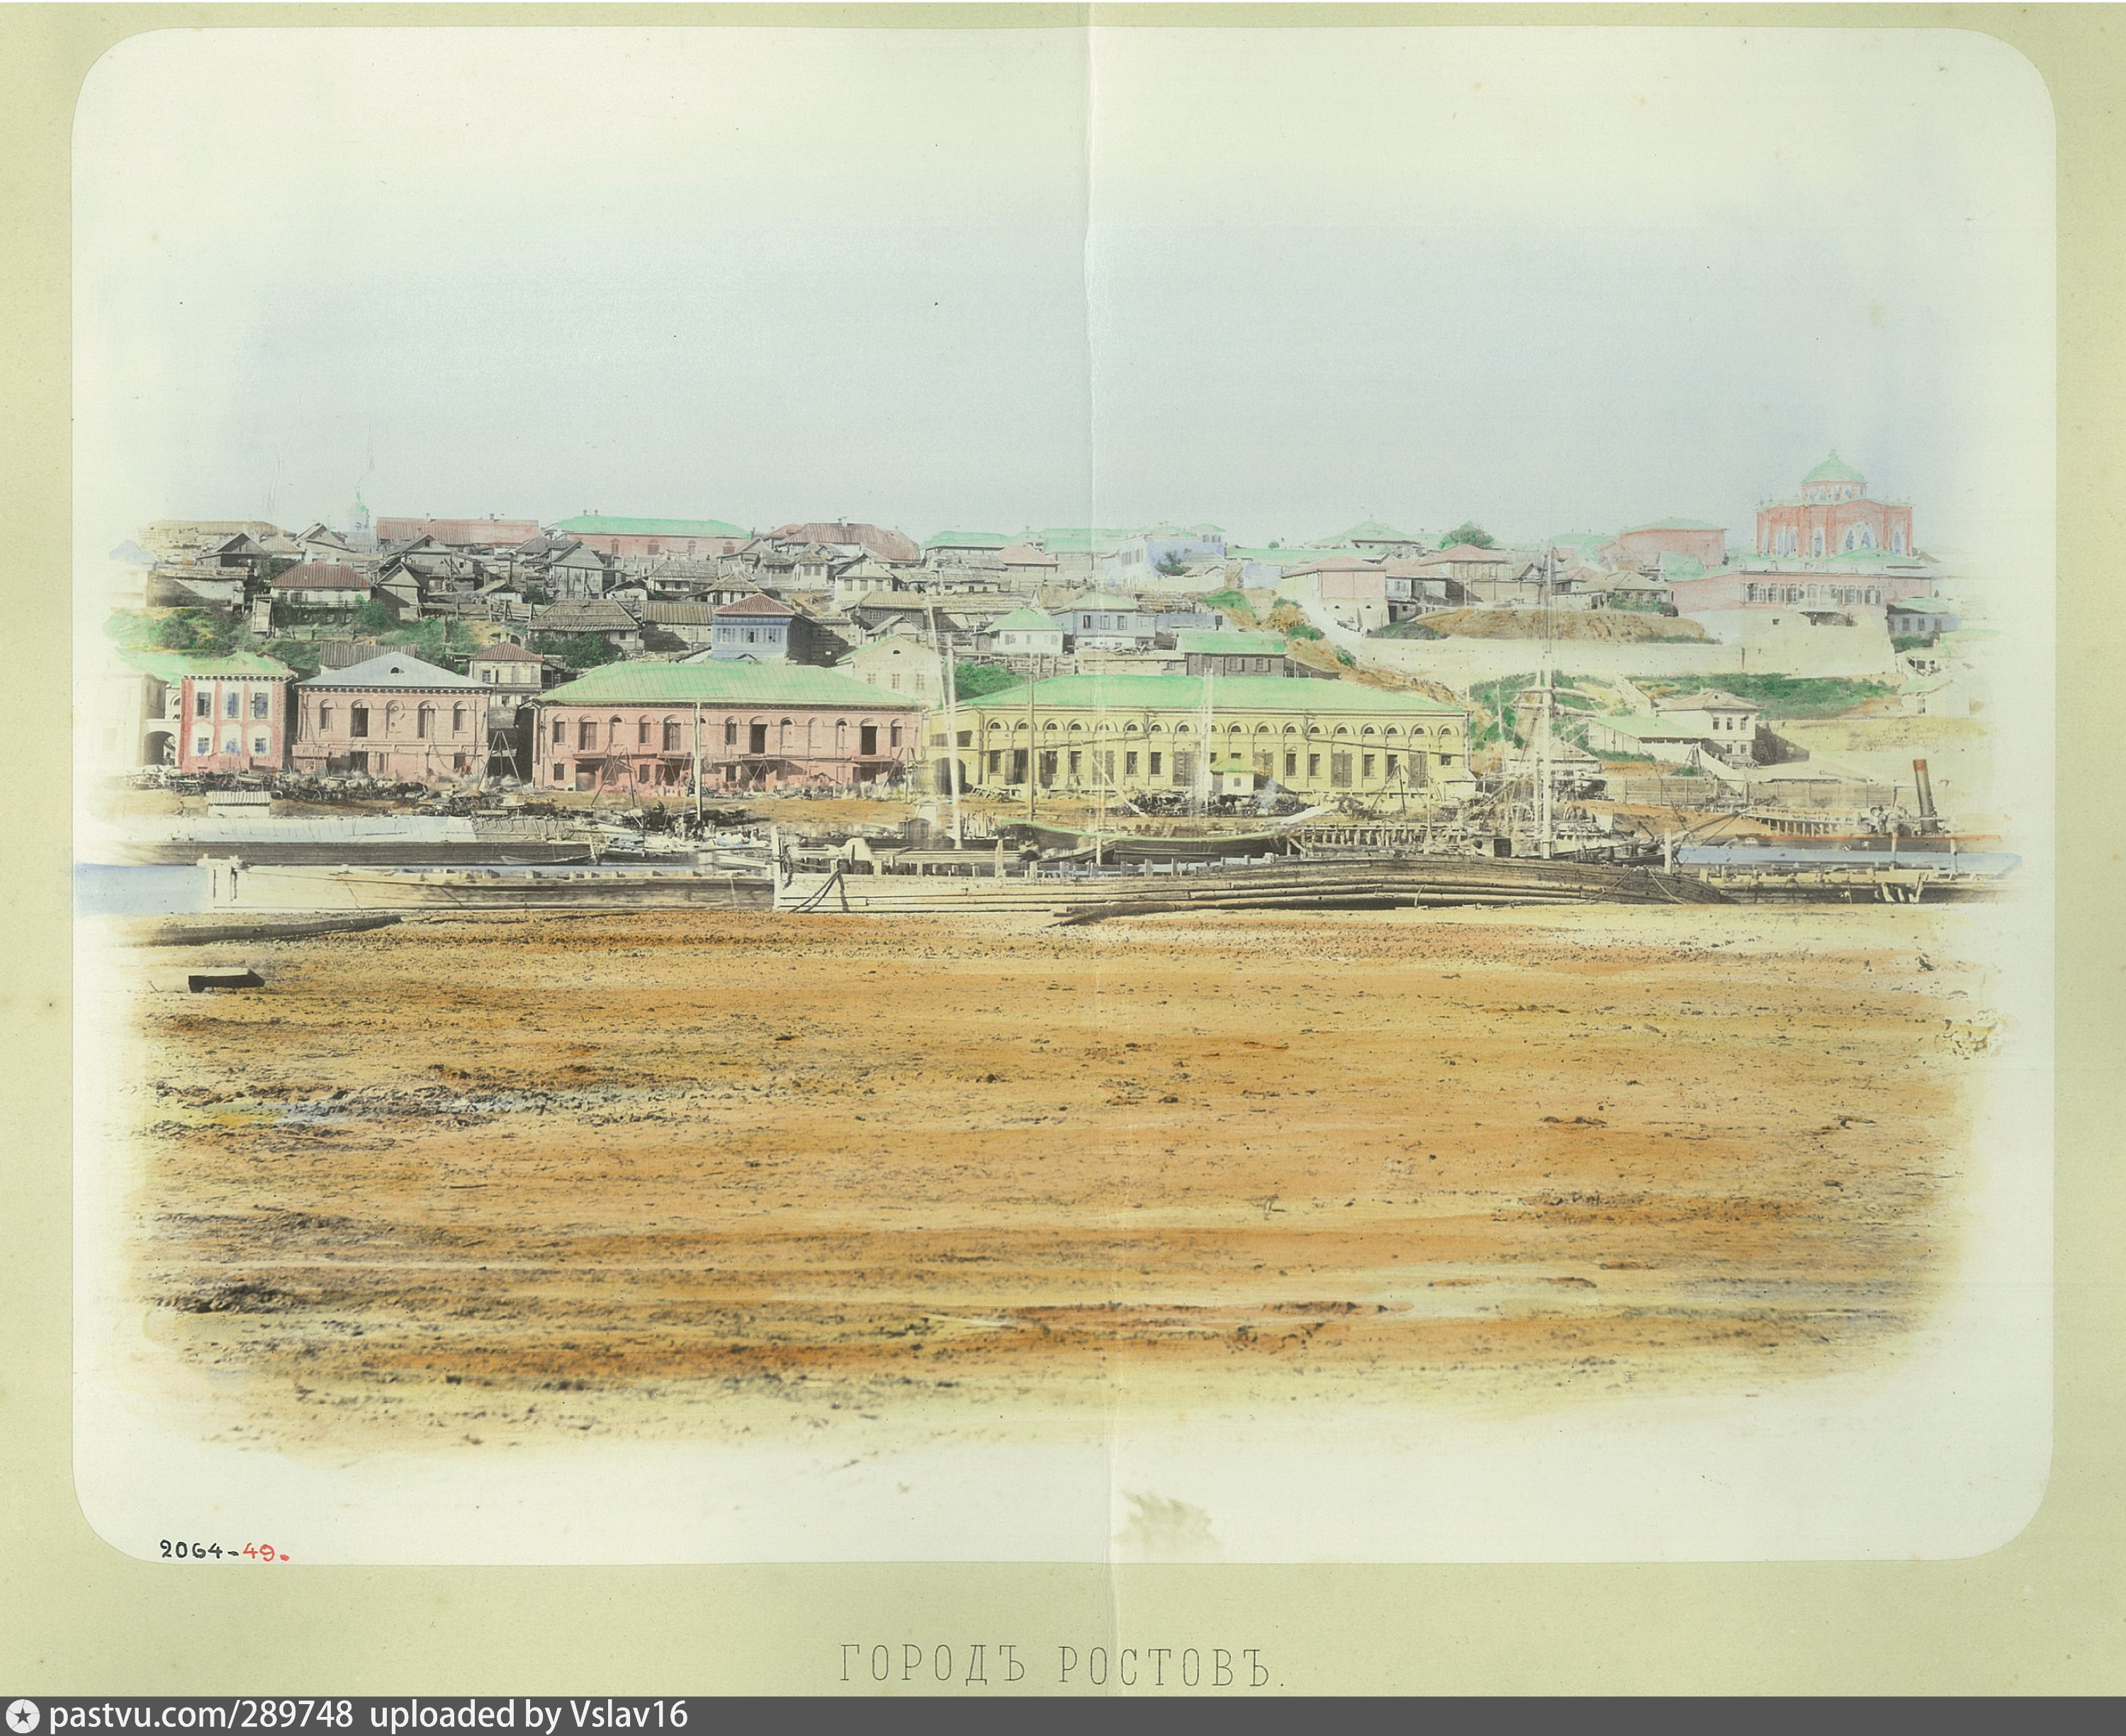 Вид на Ростов в 1869 году, через три десятилетия после супруг де Гелль